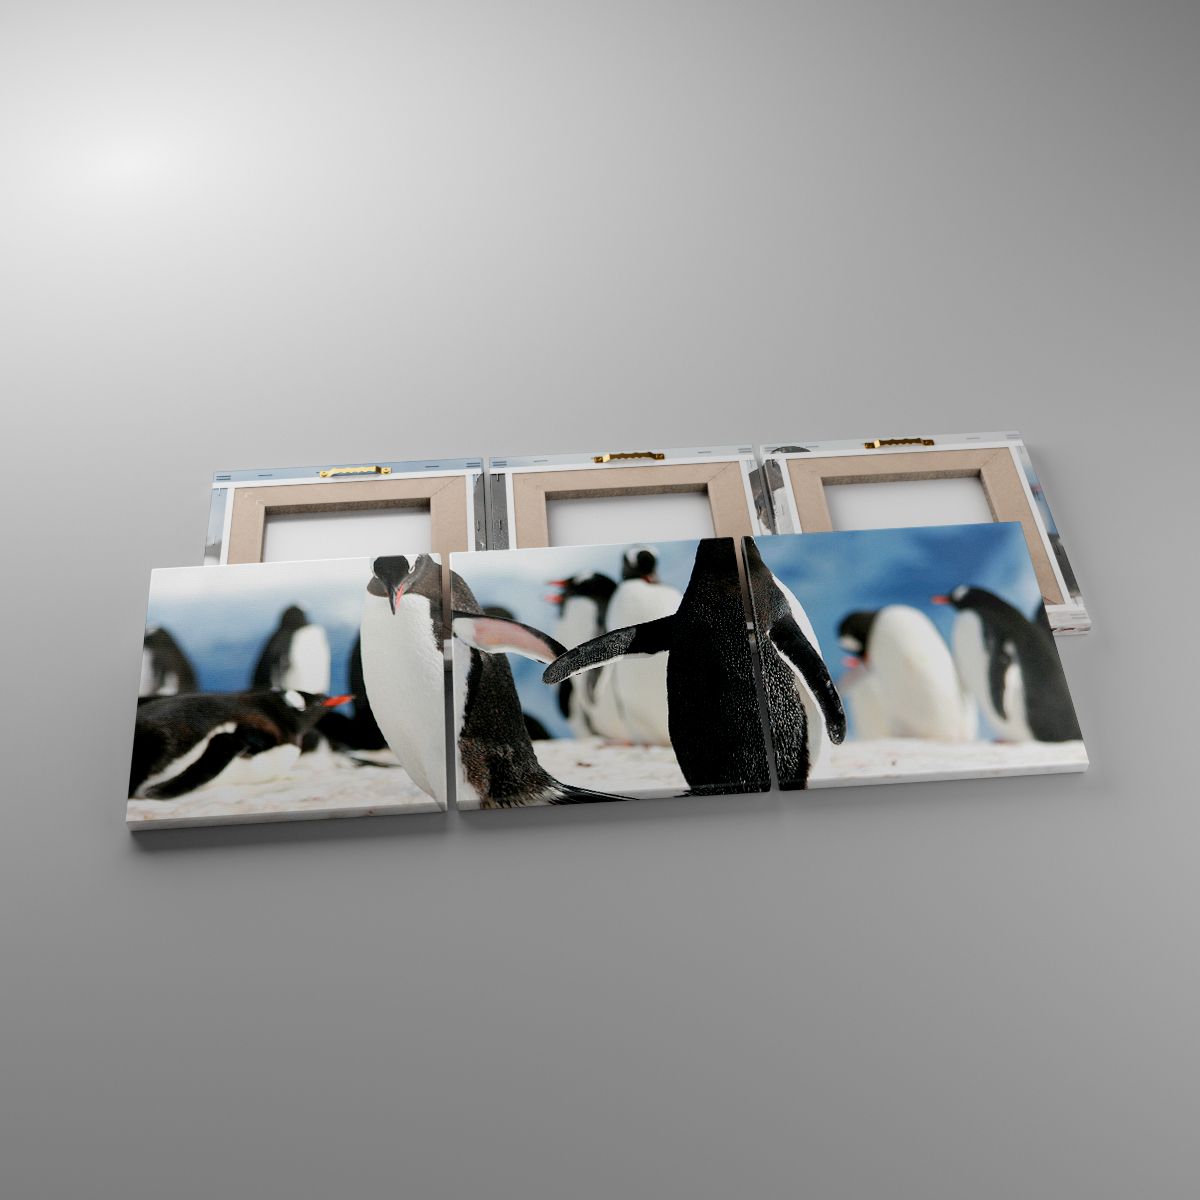 Obrazy Pingwin, Obrazy Antarktyda, Obrazy Krajobraz, Obrazy Śnieg, Obrazy Lód